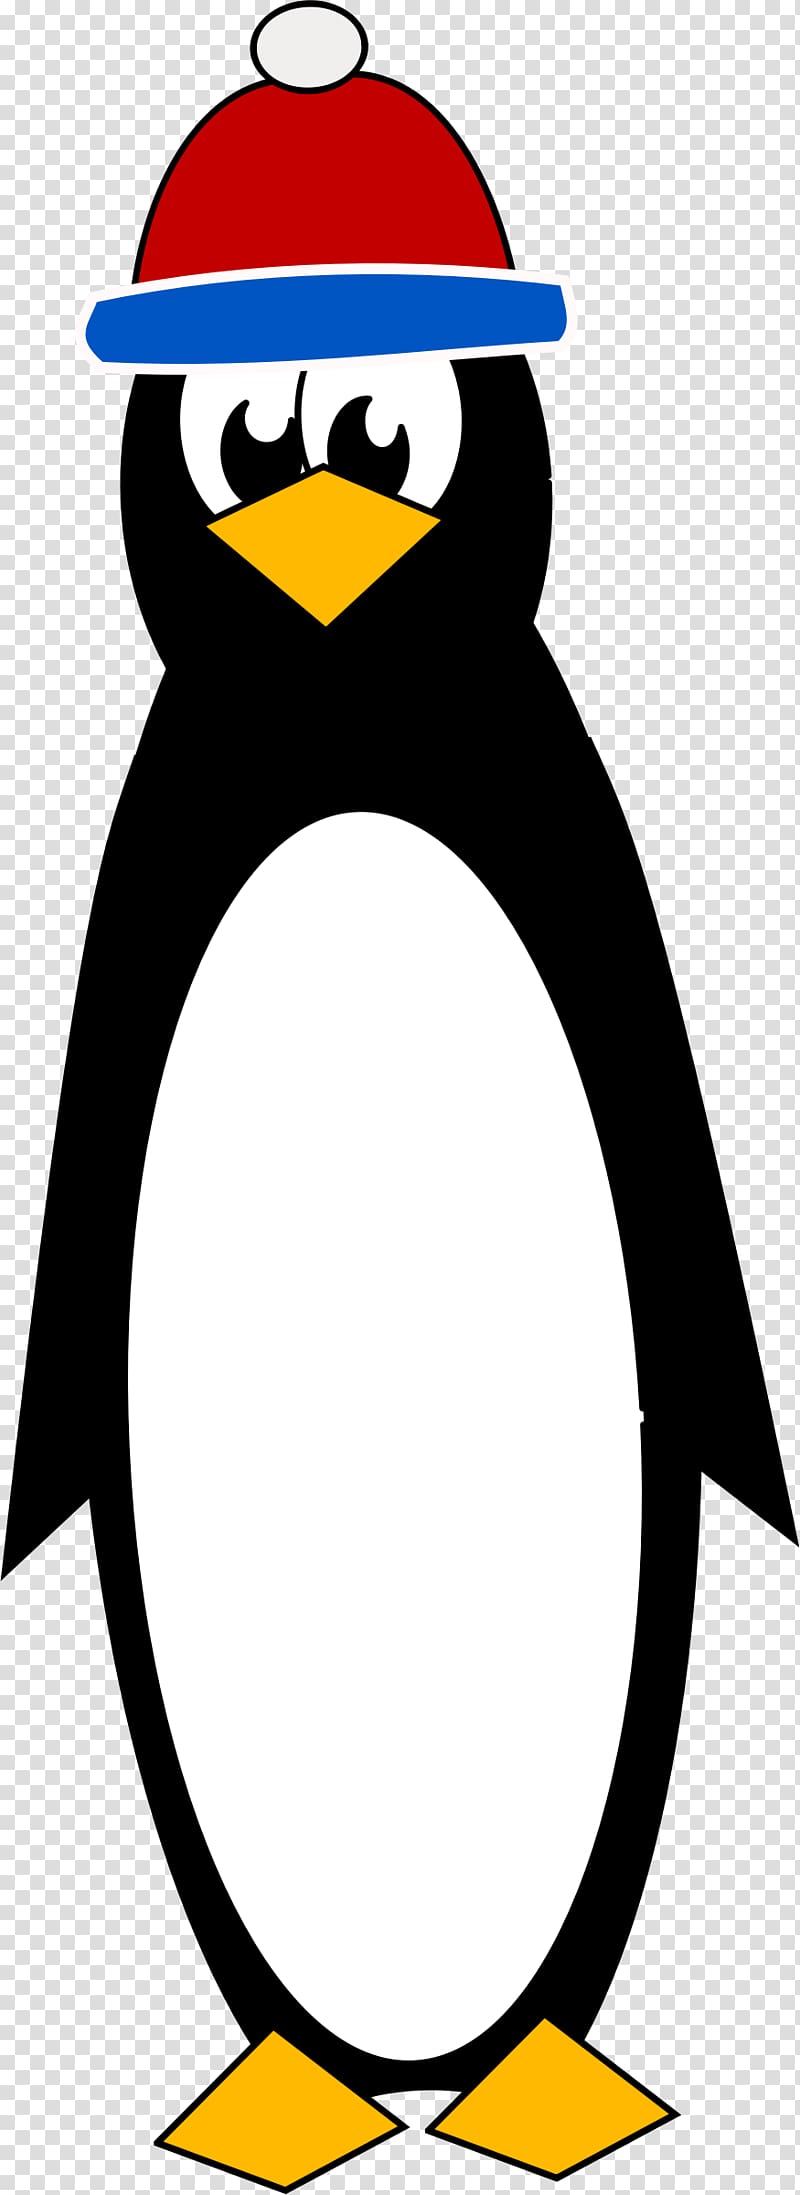 Penguin Tuxedo Tux Racer , Penguin transparent background PNG clipart